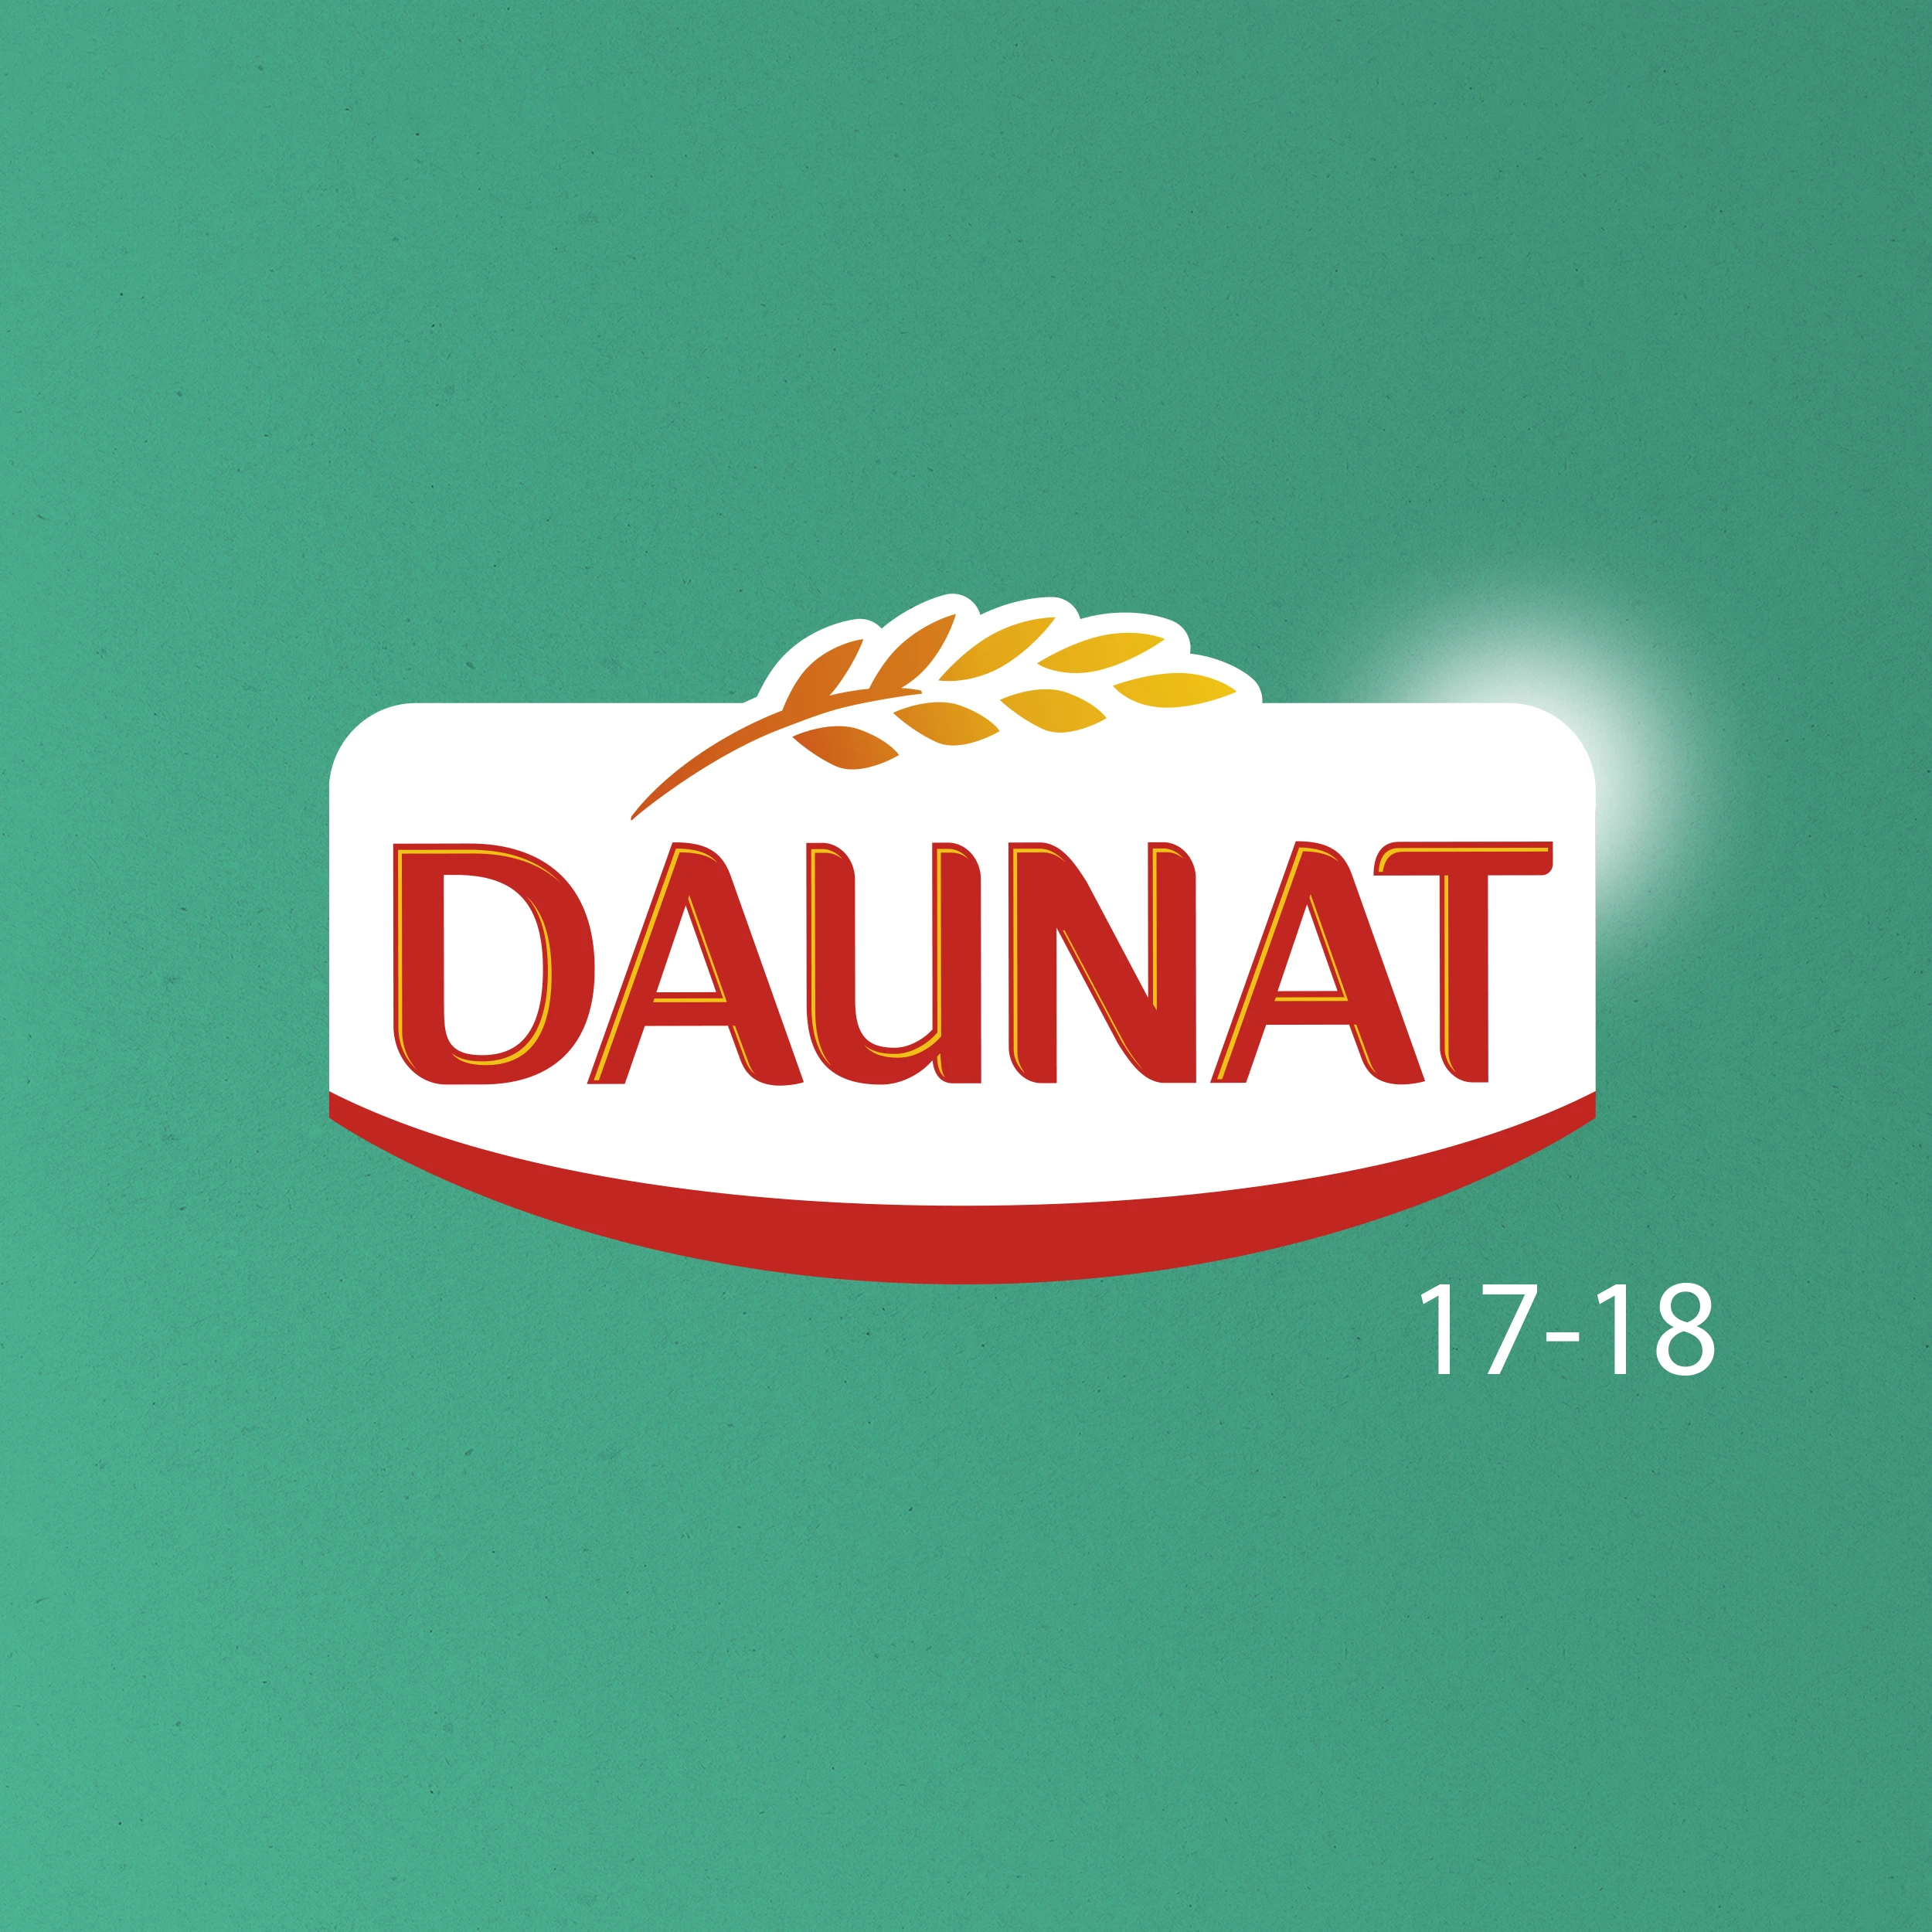 projet : Daunat - 17-18